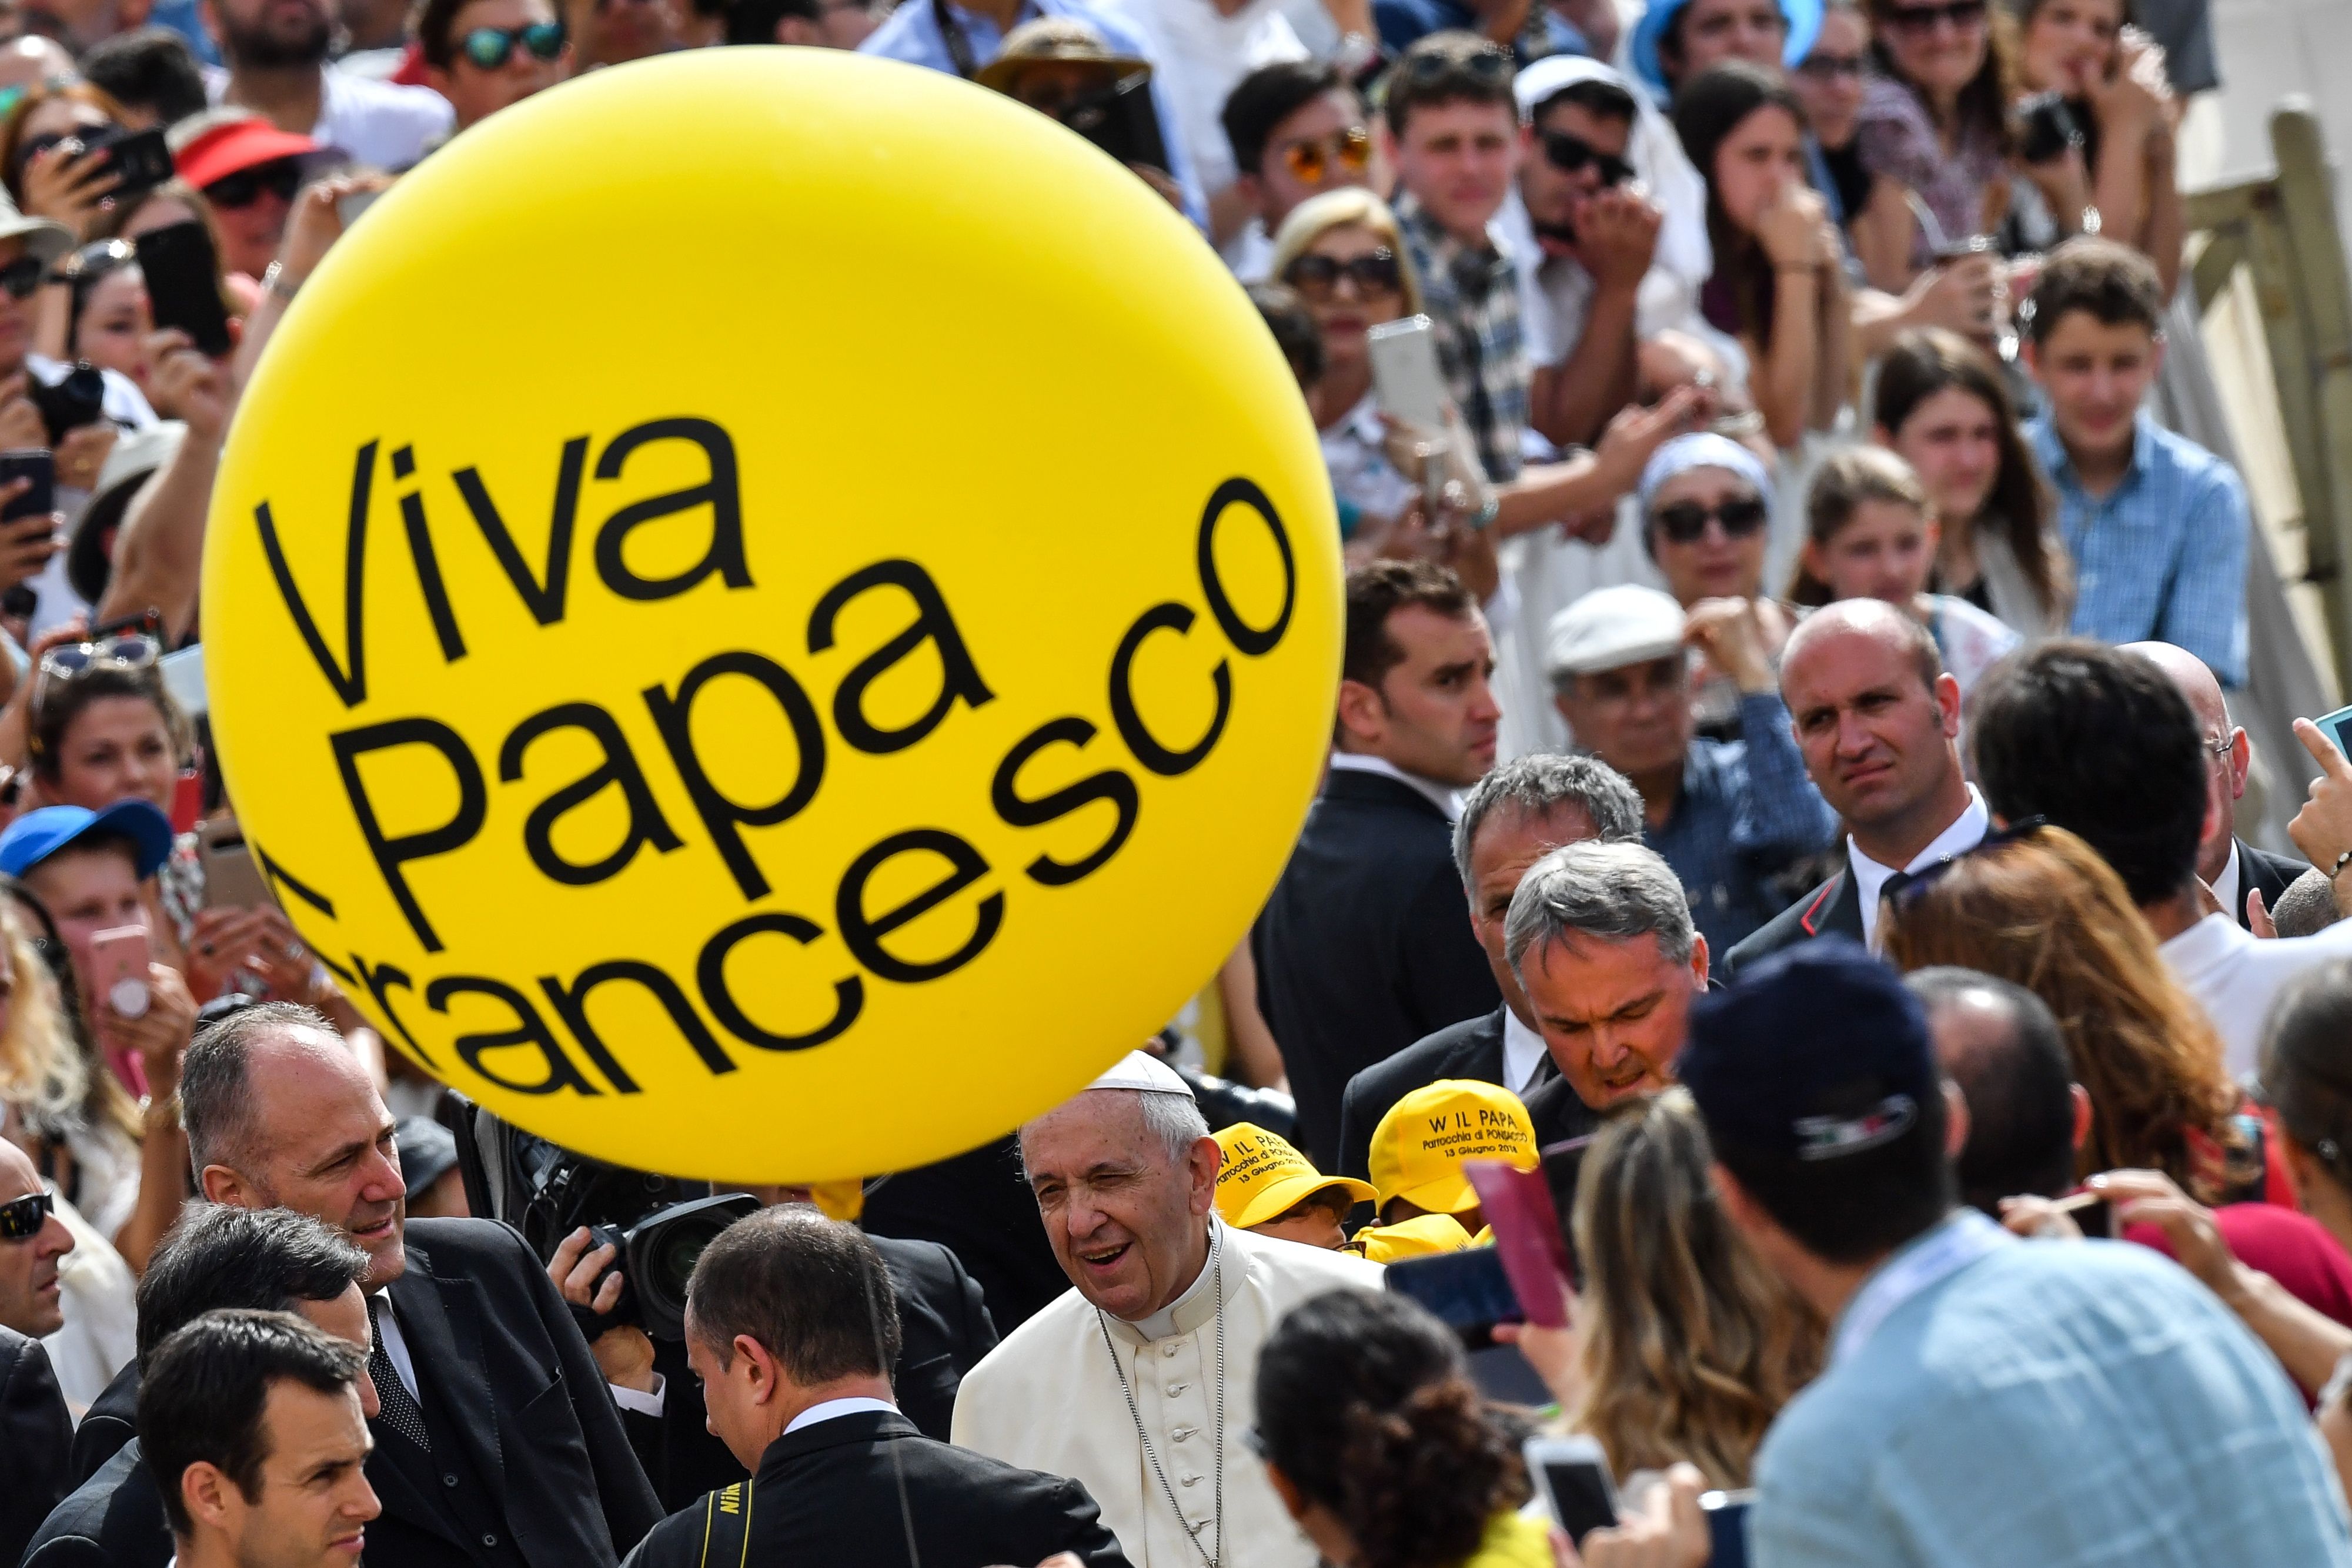 	بالون مكتوب عليه "عاش البابا فرنسيس" لتحية البابا